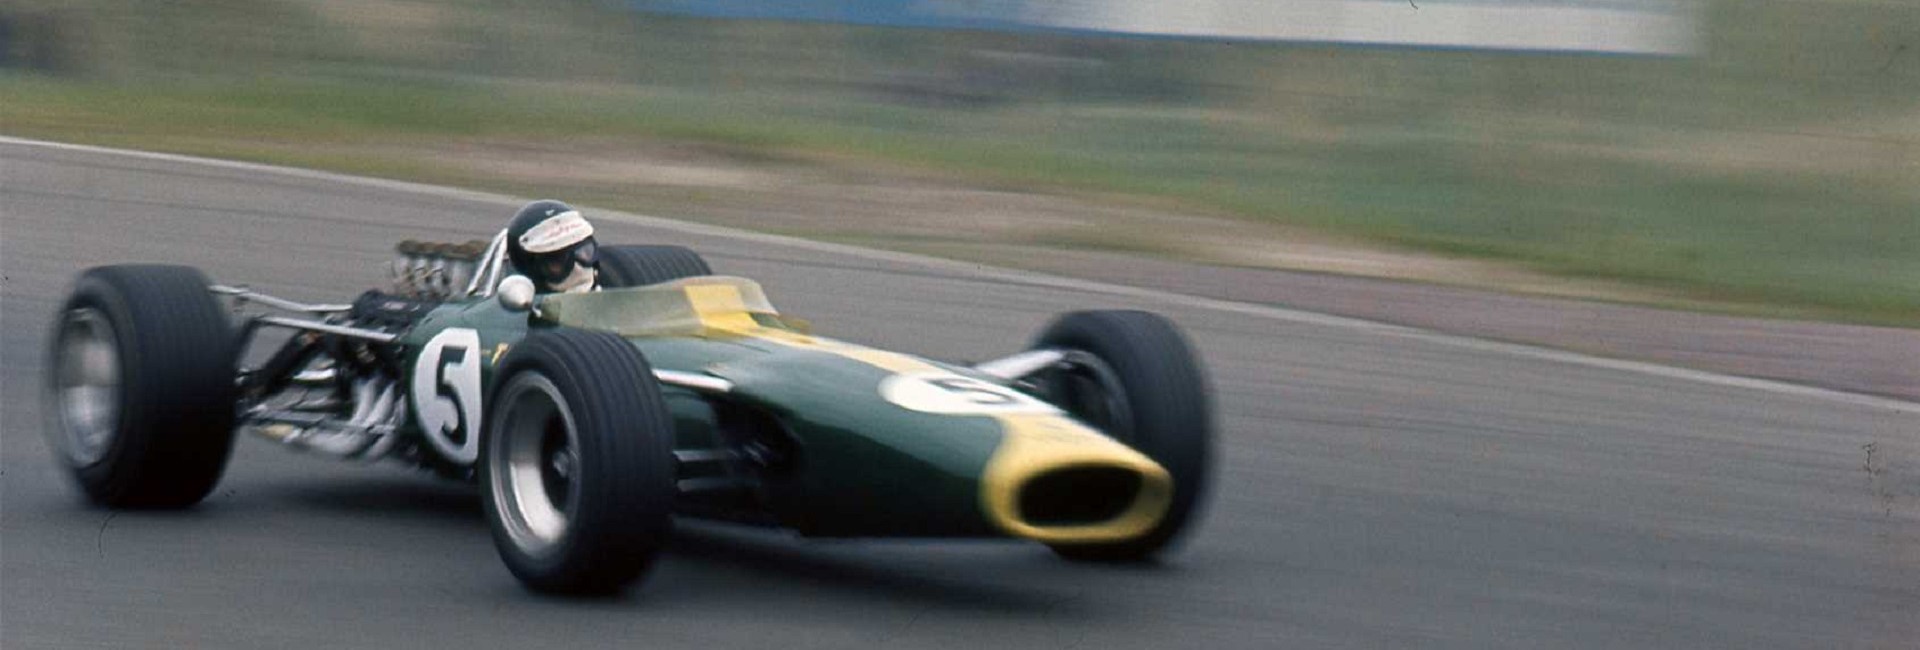 1967-LotusDutchGrandPrix